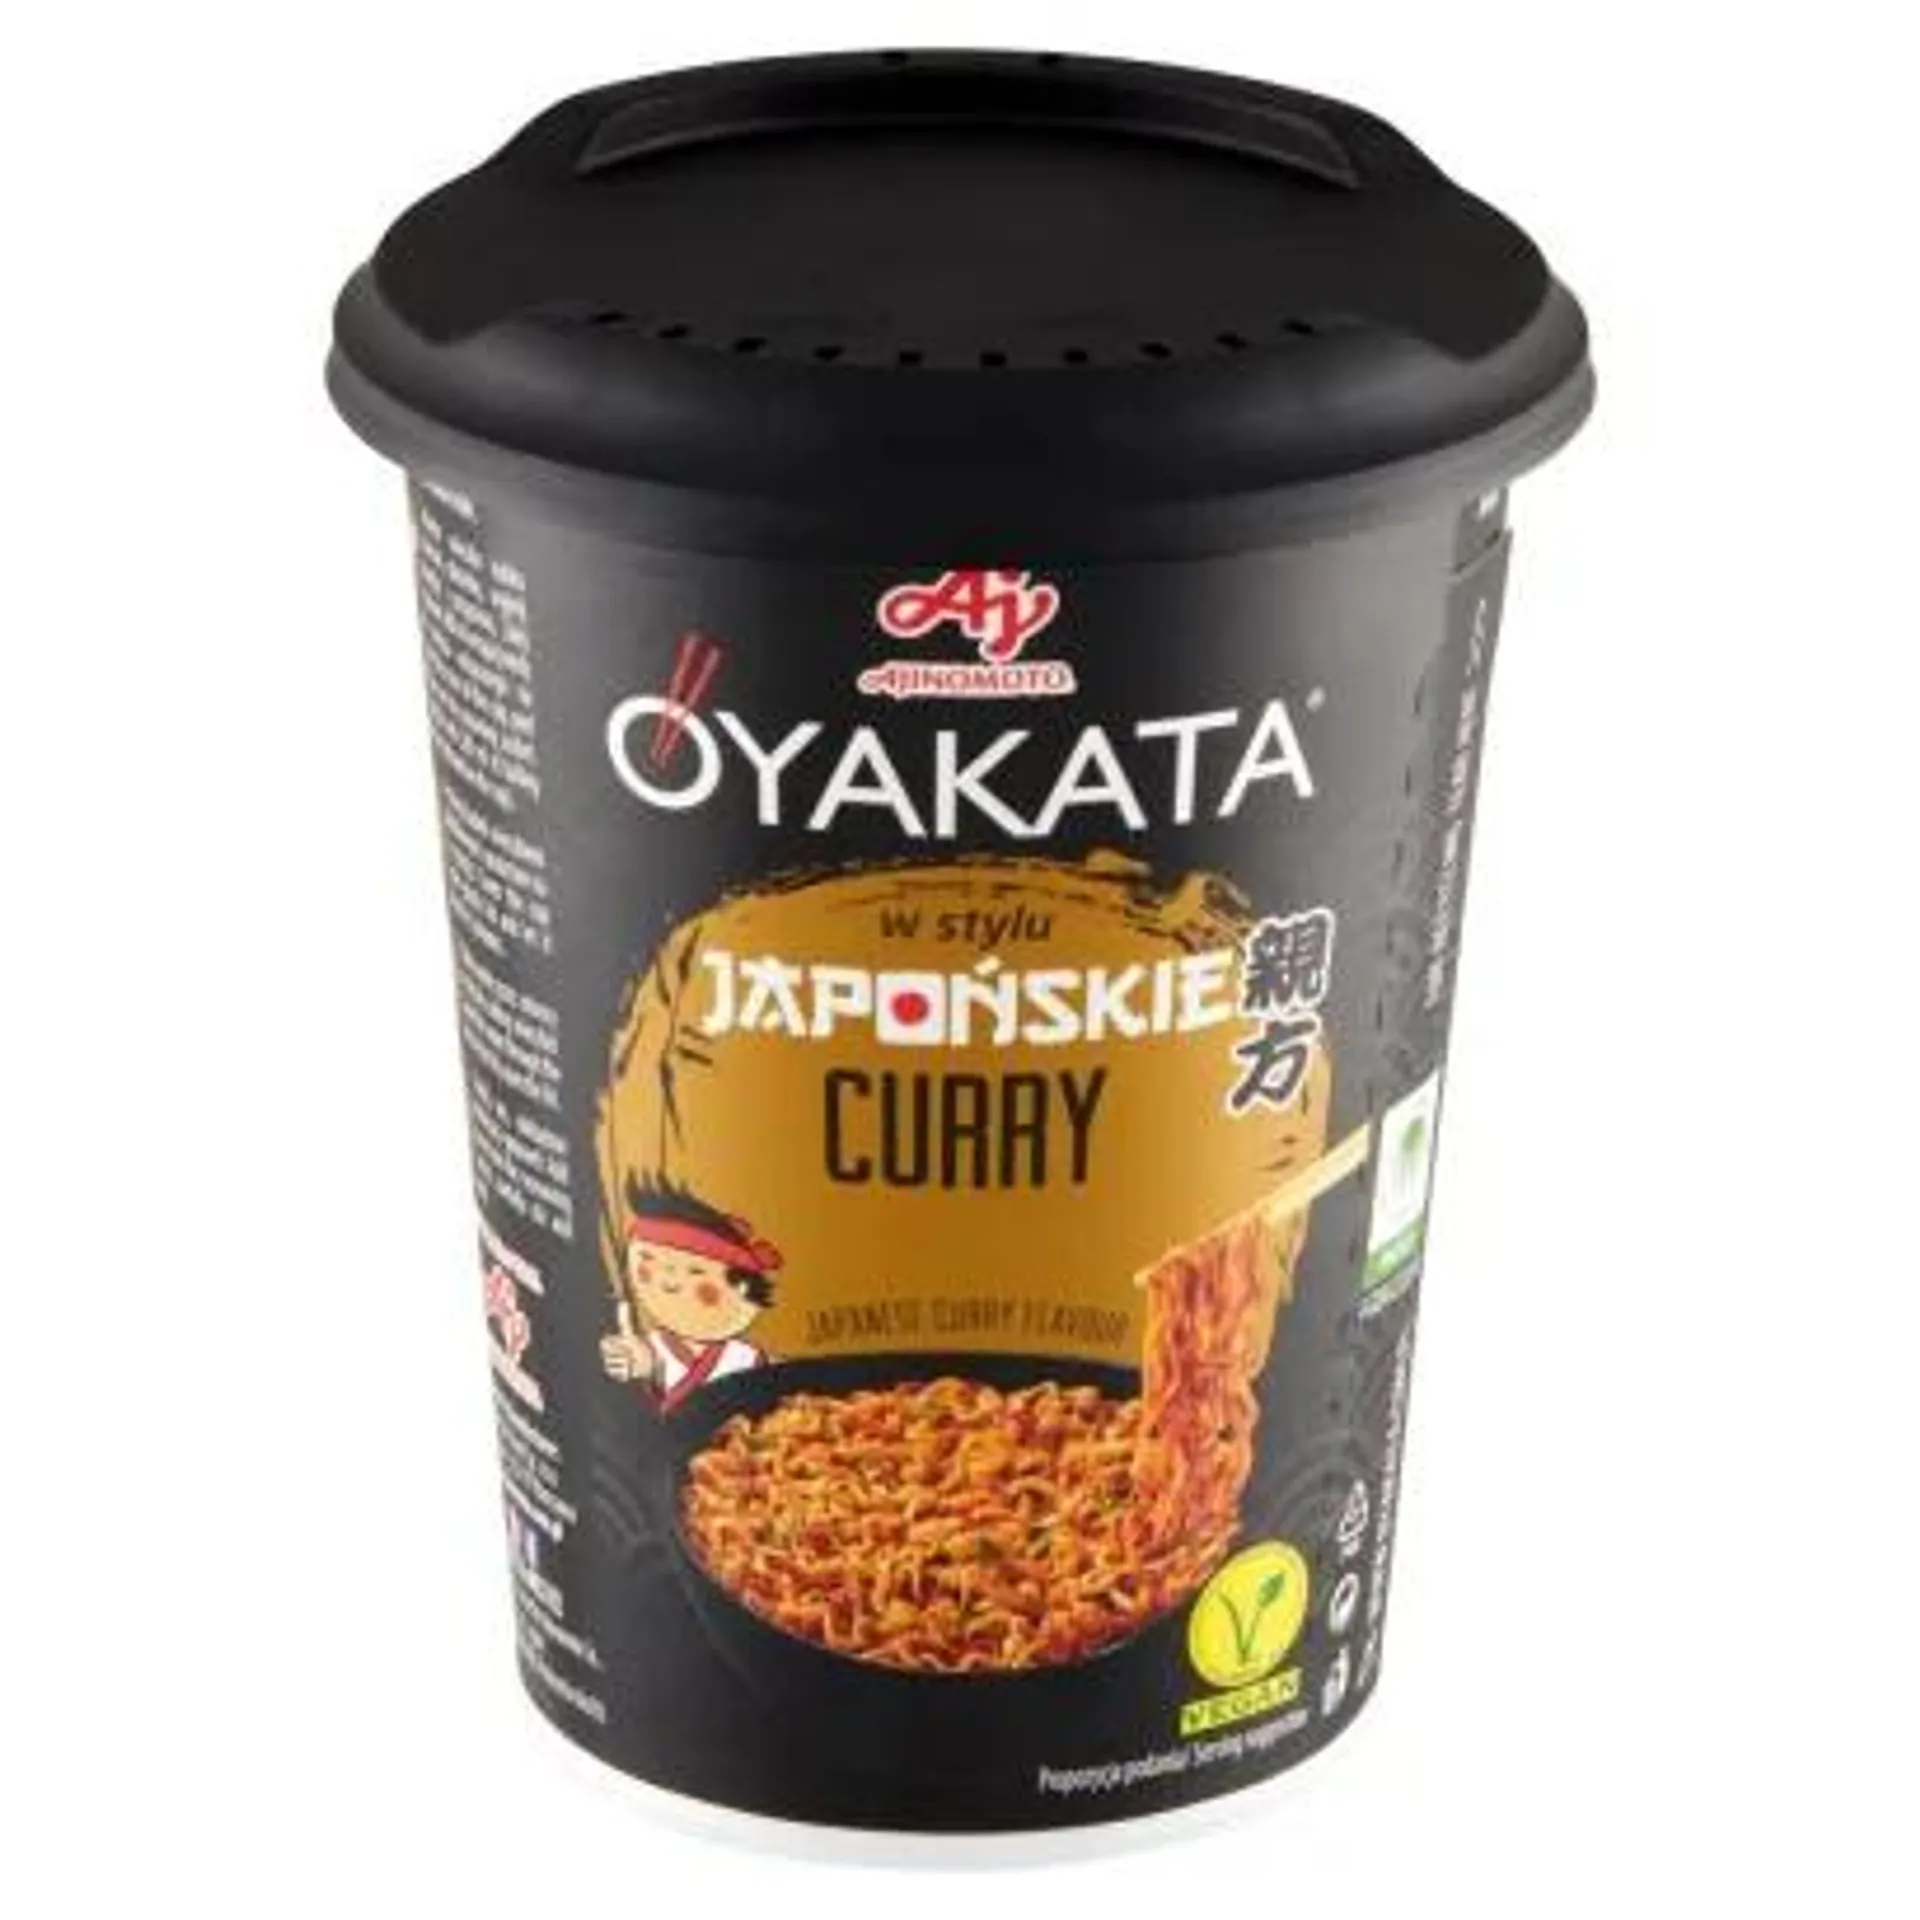 OYAKATA - Danie w stylu Japońskie curry